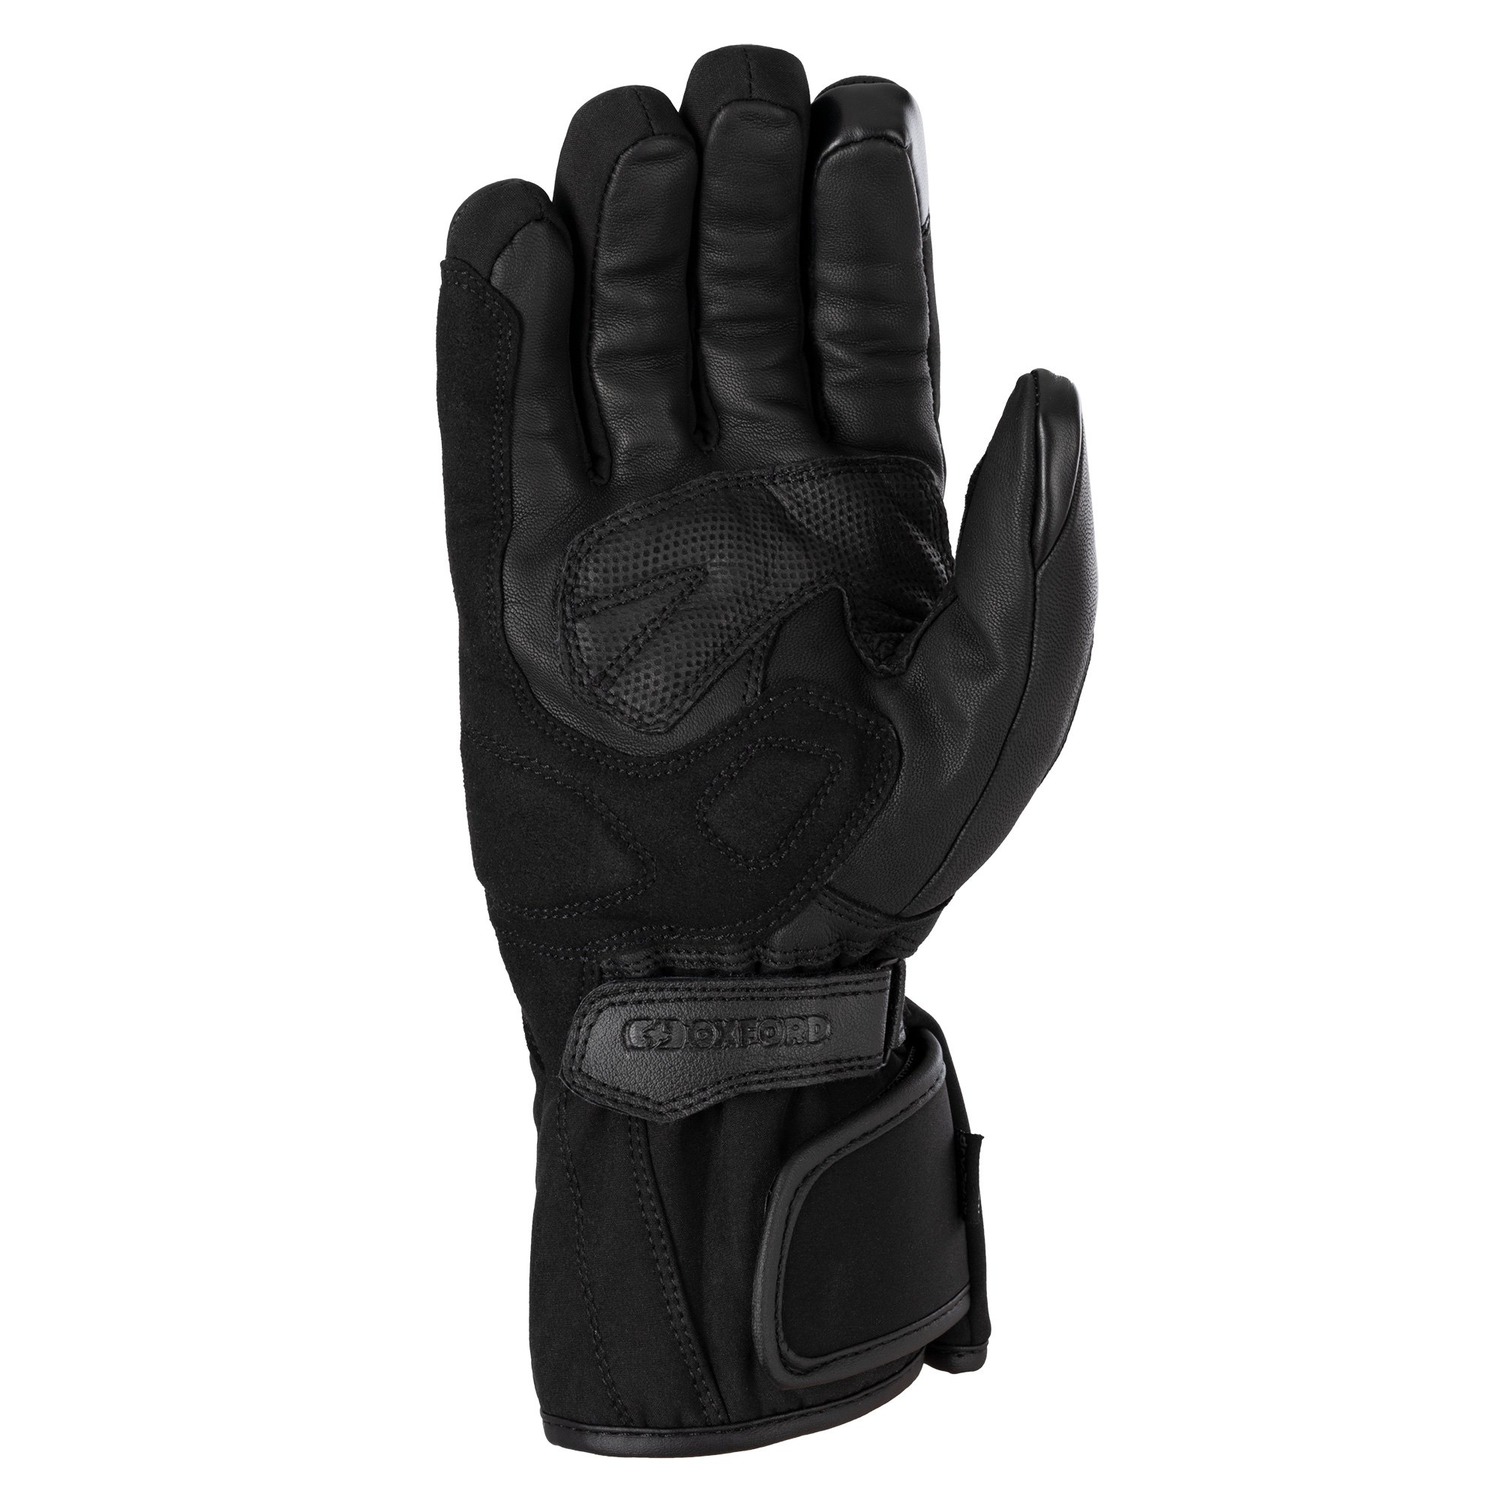 Obrázek produktu rukavice CALGARY 2.0, OXFORD (černé)